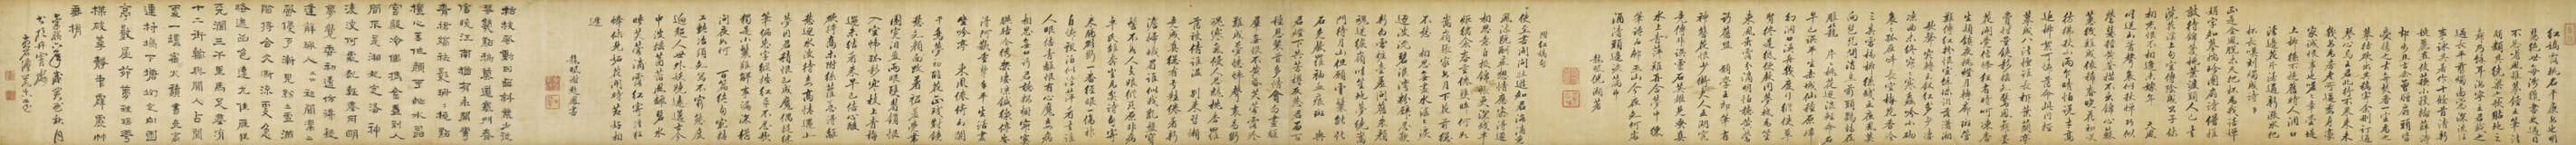 NI HAO(17TH CENTURY)/ XIE QIFENG(17TH CENTURY)/ FA RUOZHEN (1613-1696) - photo 2